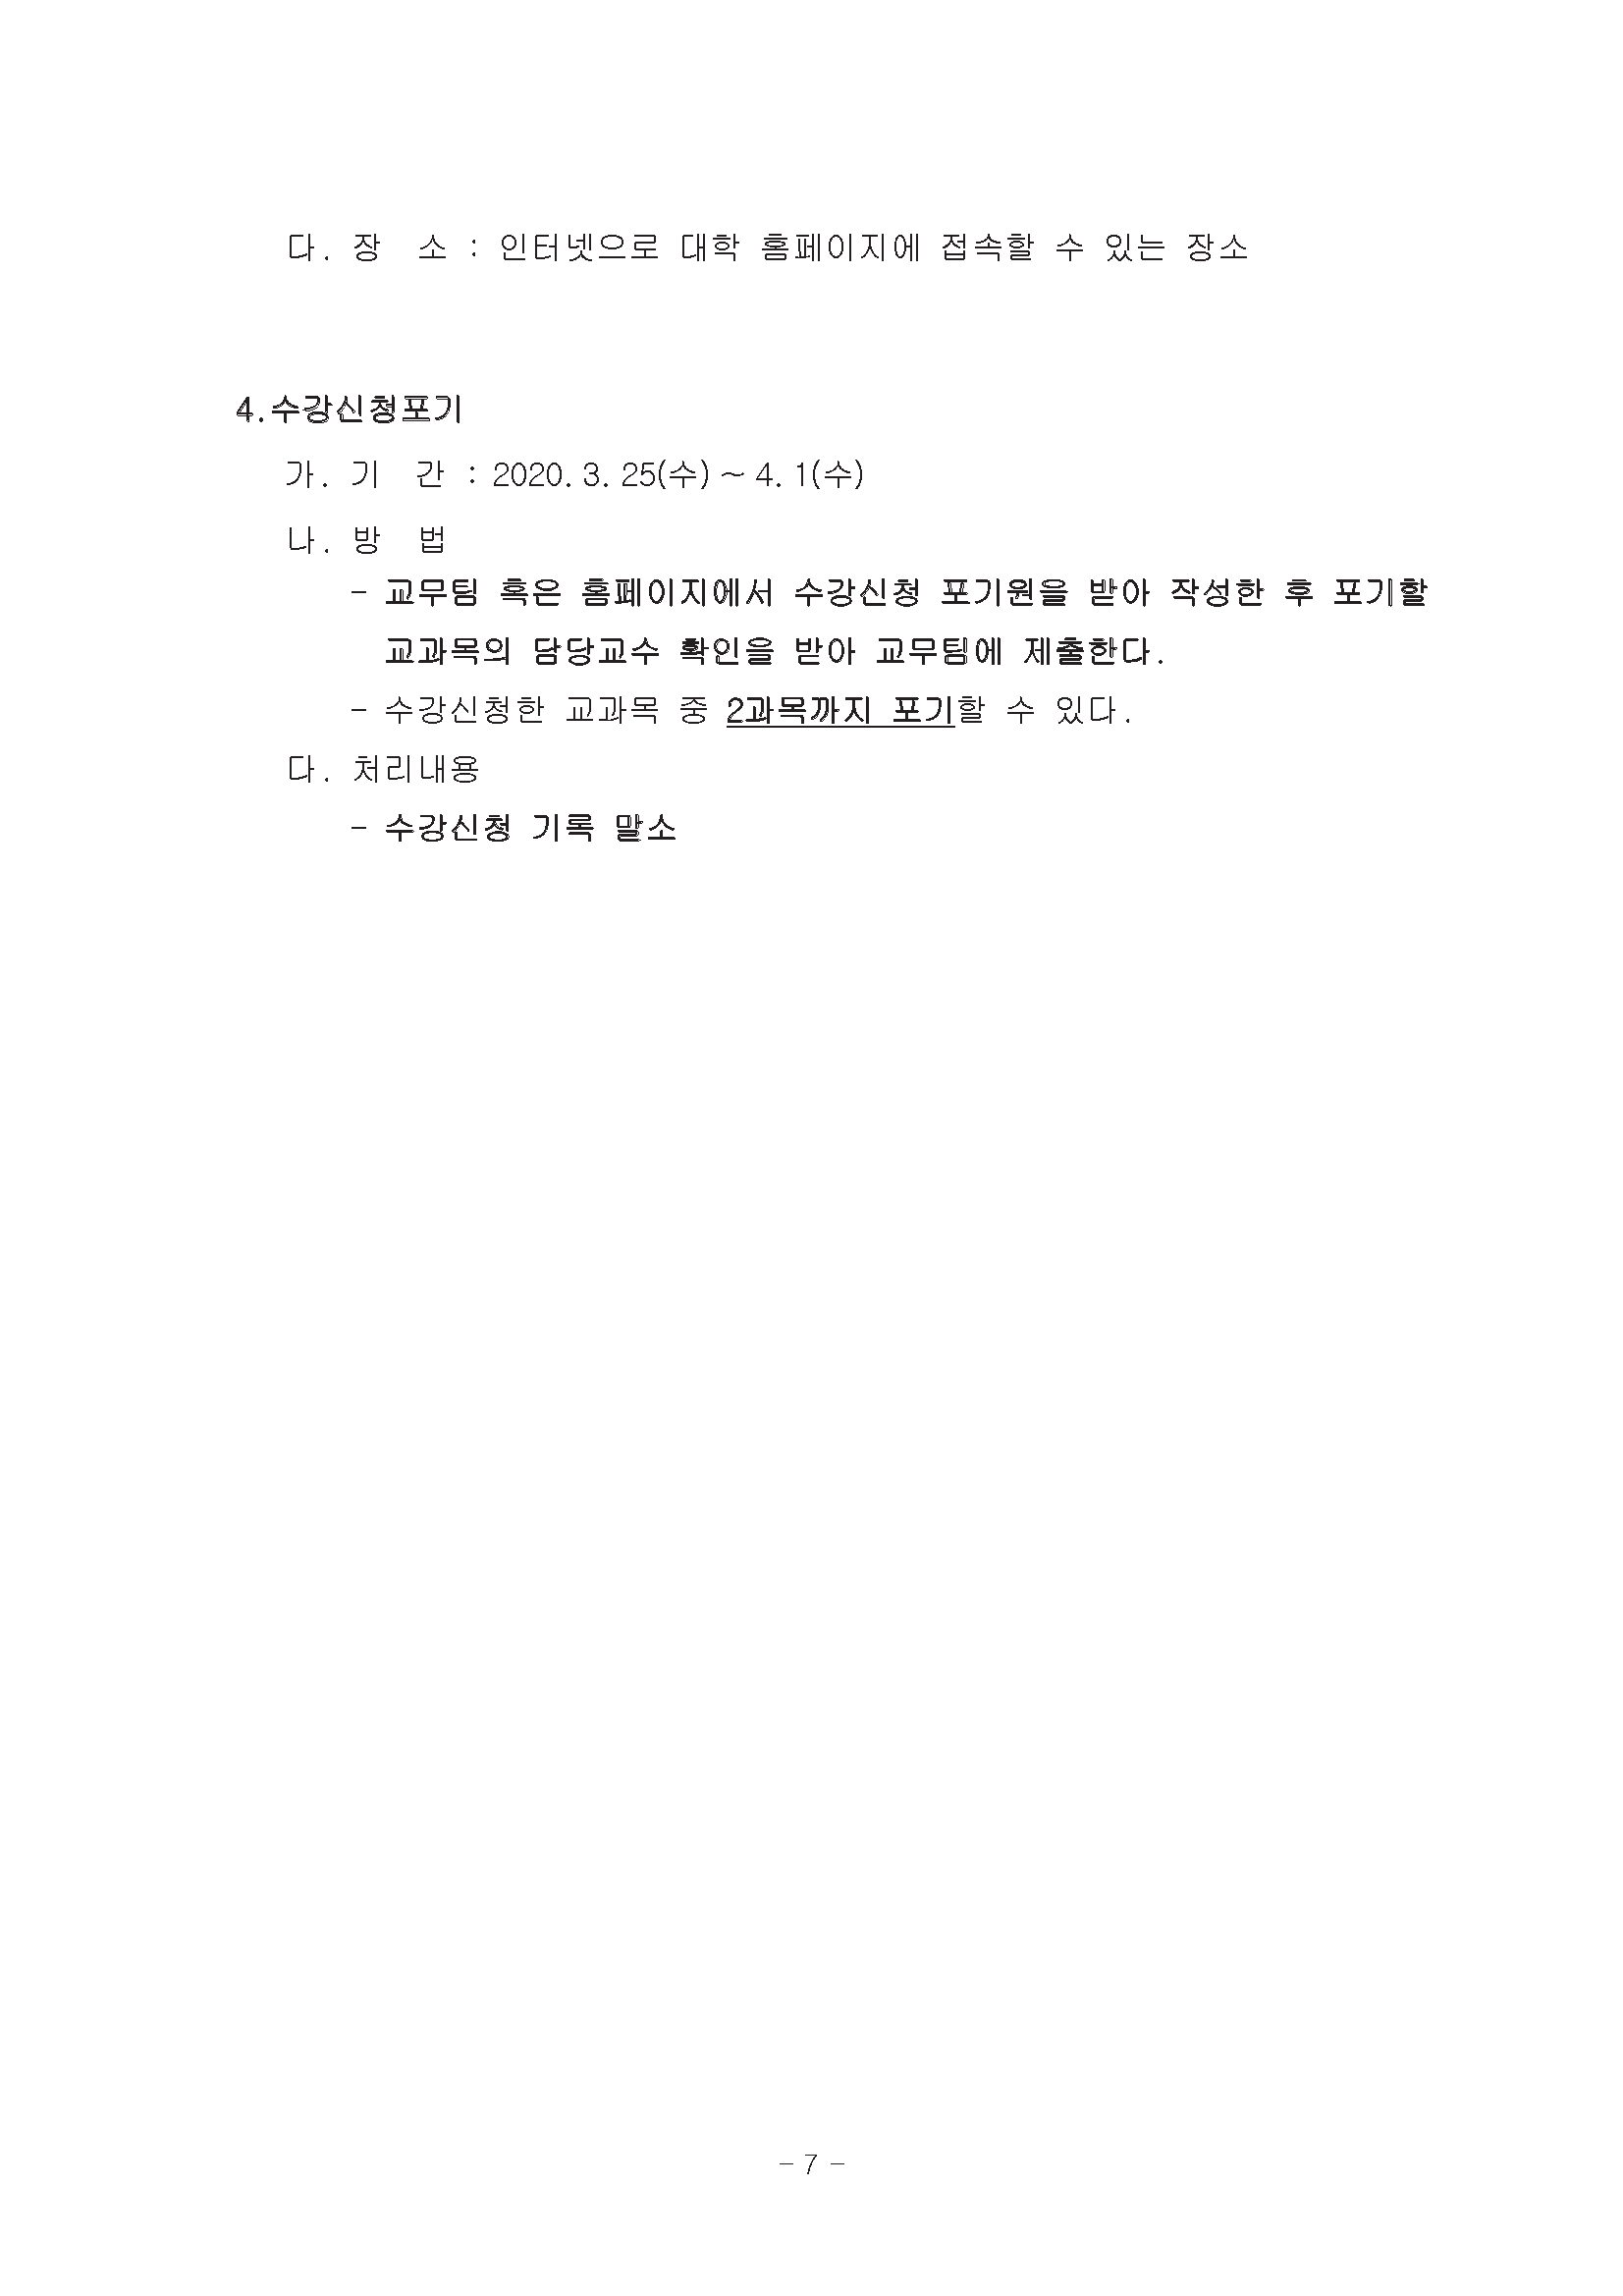 0302-2020학년도 1학기 강의시간표(교무팀_김동욱)7.png